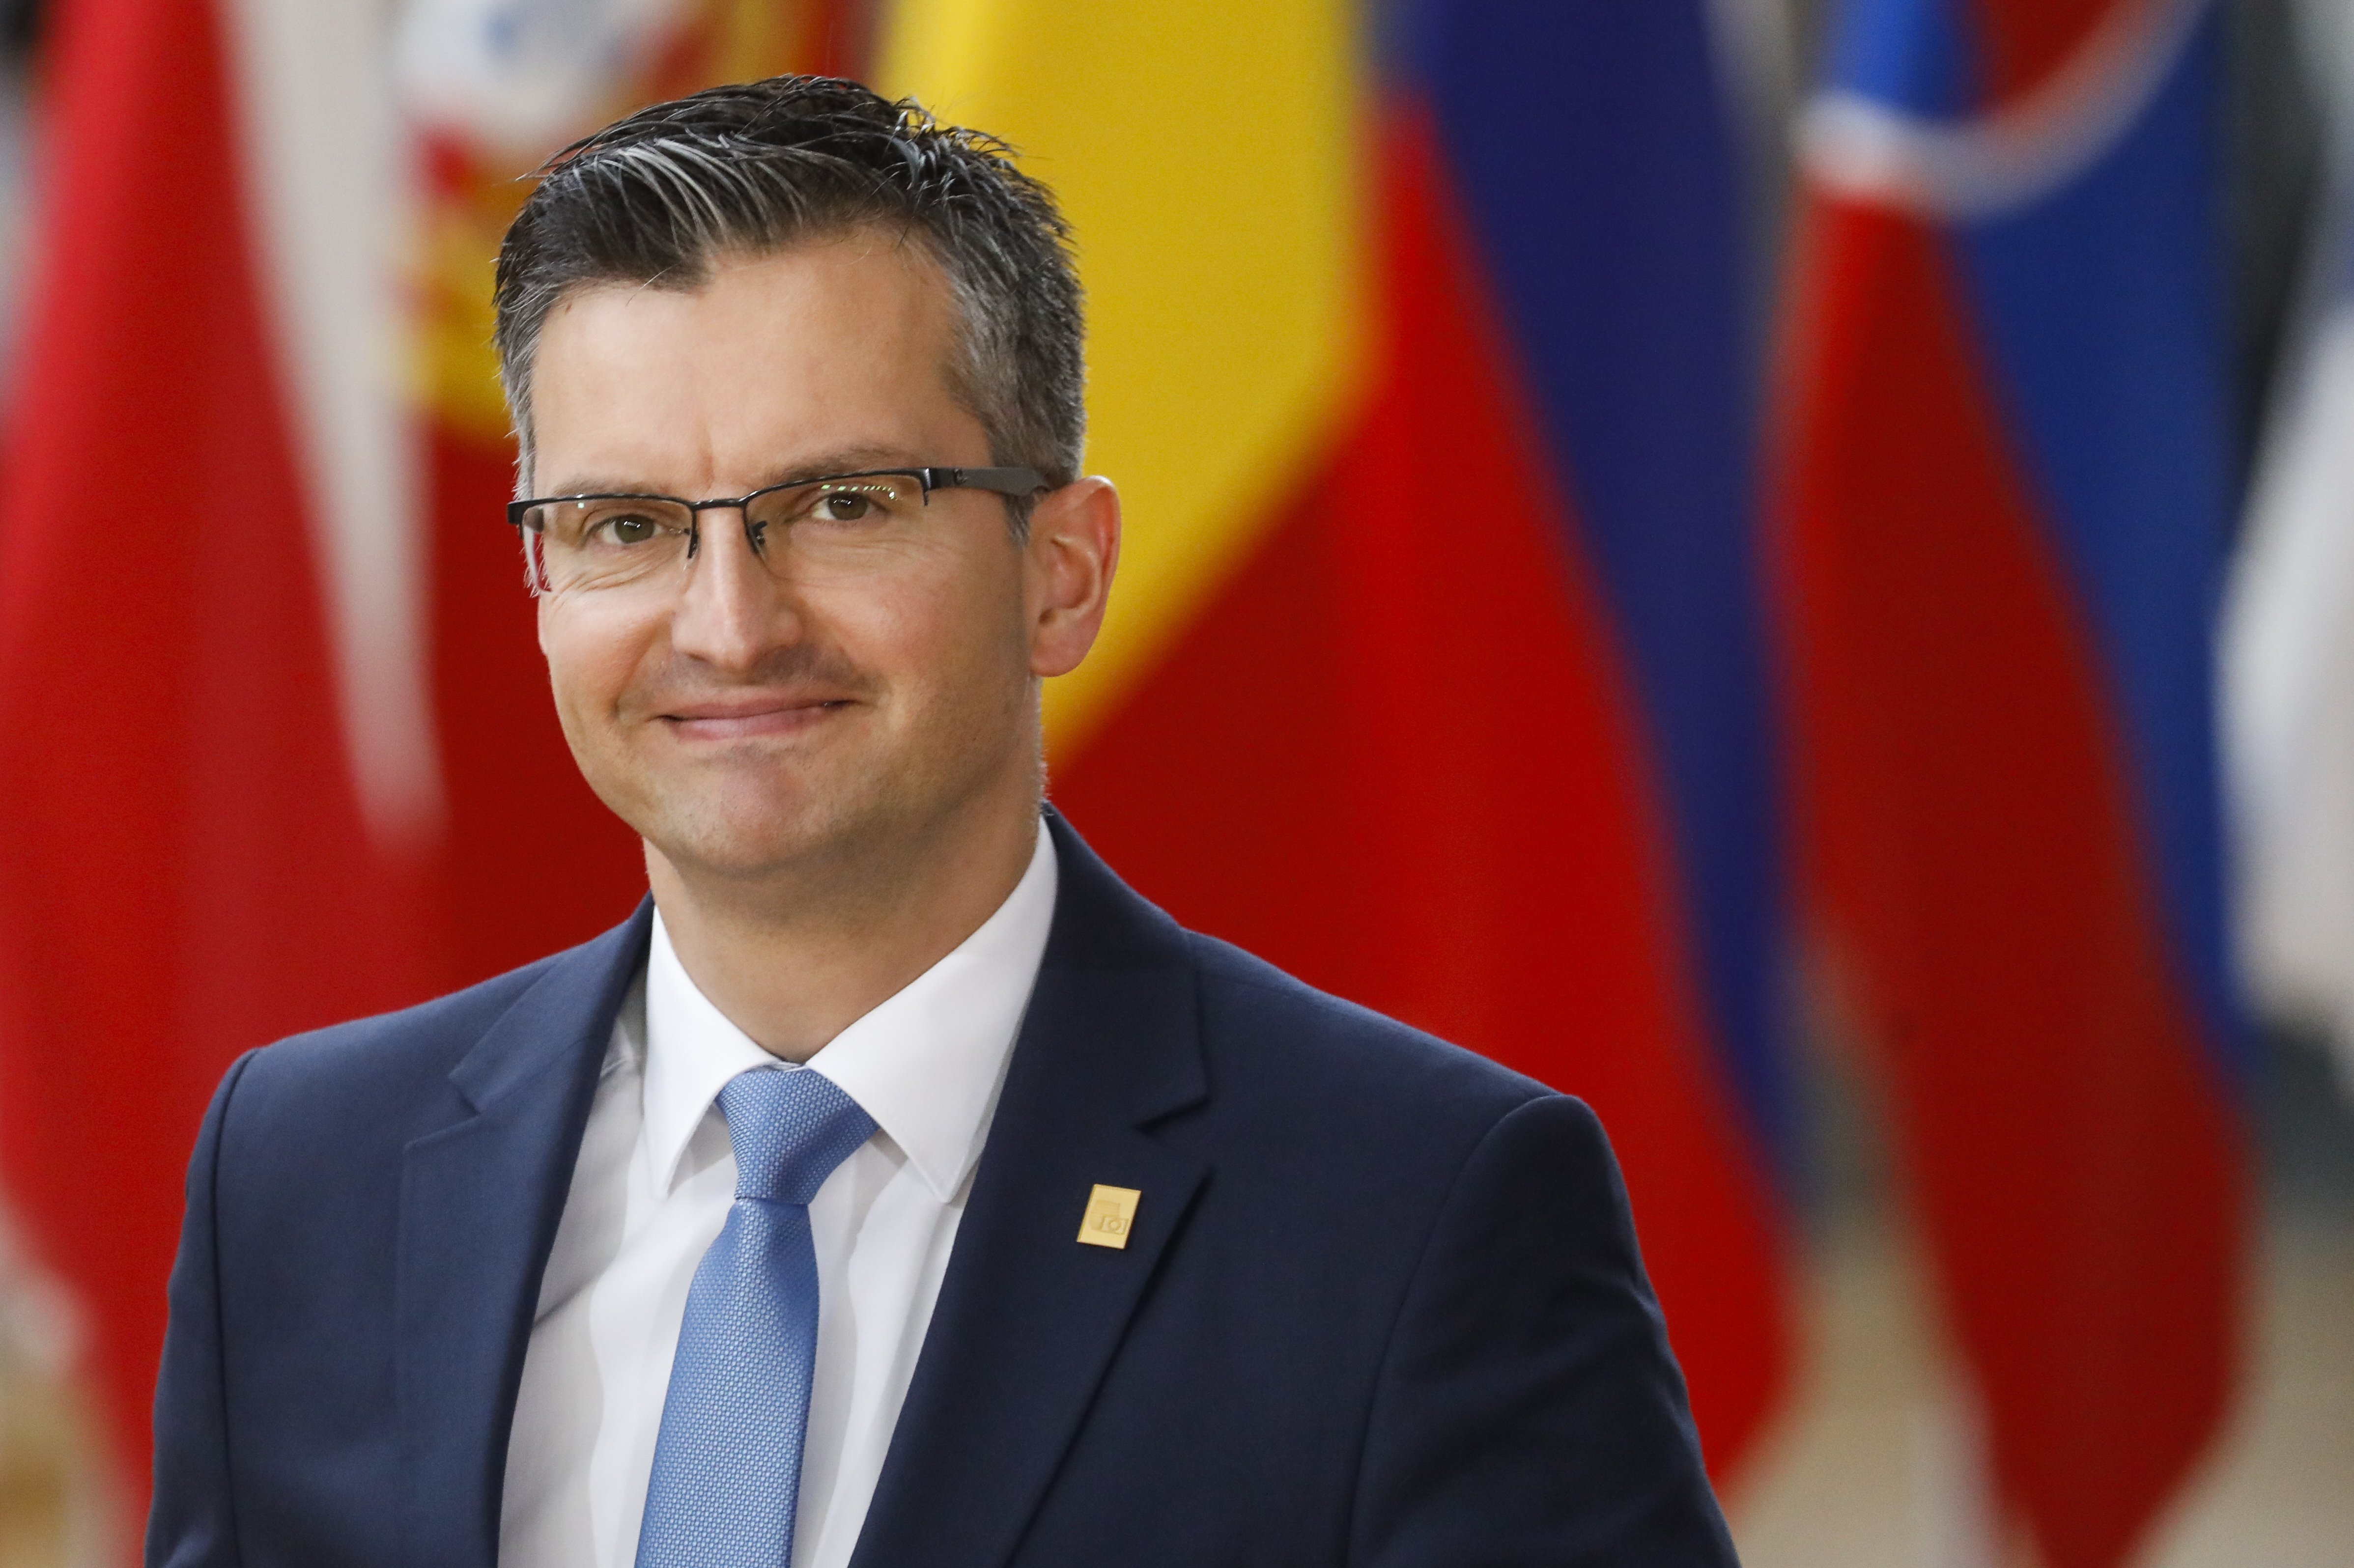 El primer ministro esloveno censura a España por "resolver los problemas con violencia"